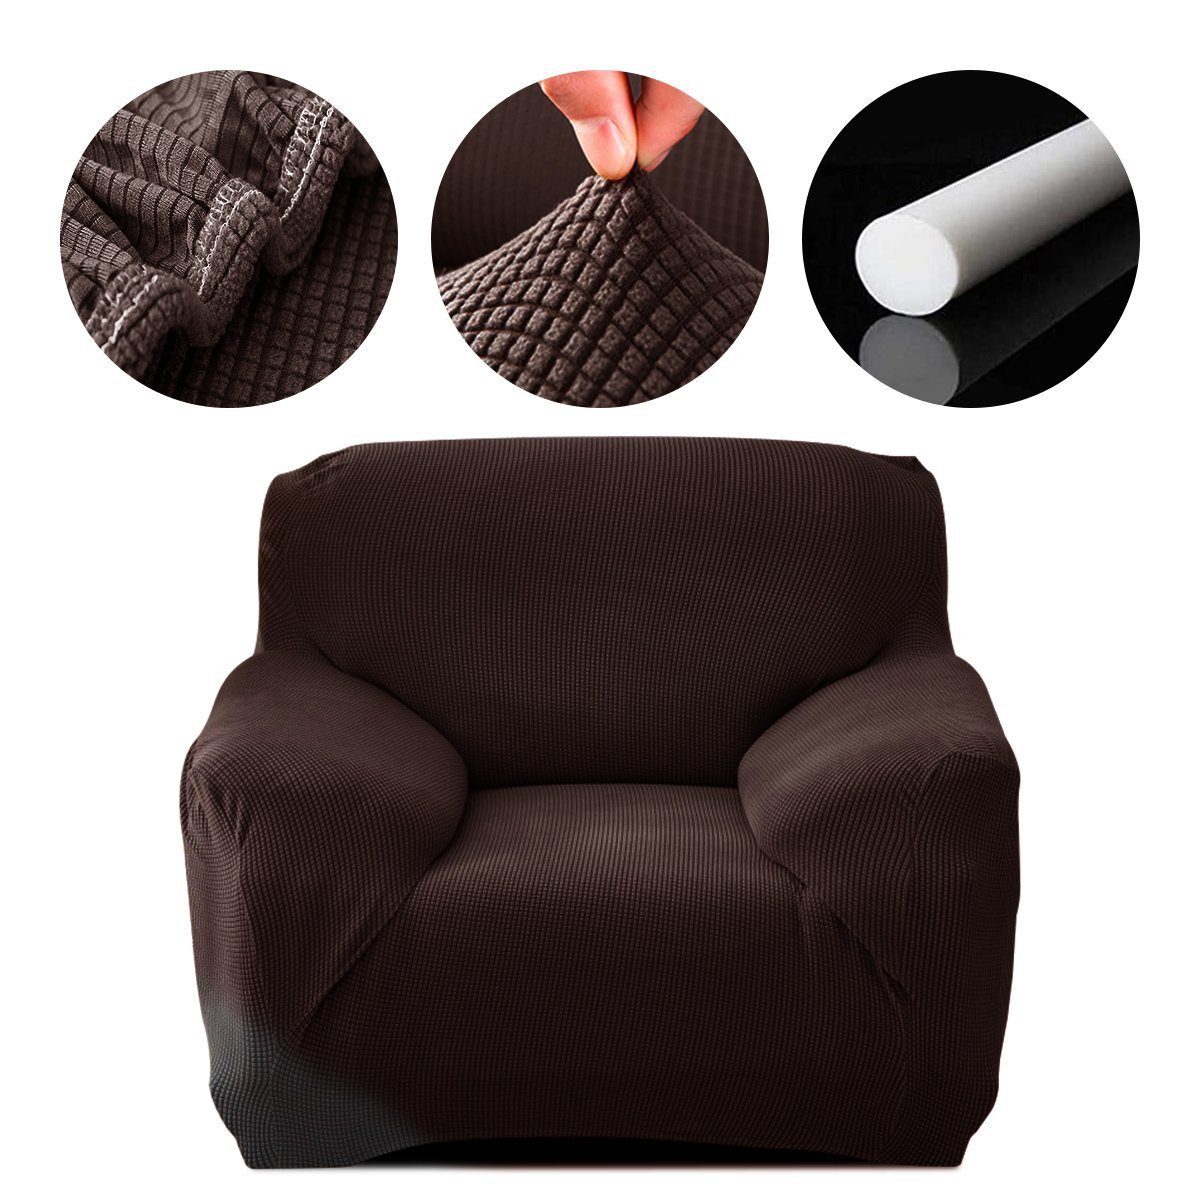 Sofahusse Sofahusse Stretch Sofa Abdeckung mit Elastische, MULISOFT, Sofabezug 1/2/3/4 Sitzer Stretch Schonbezug Couchbezug braun